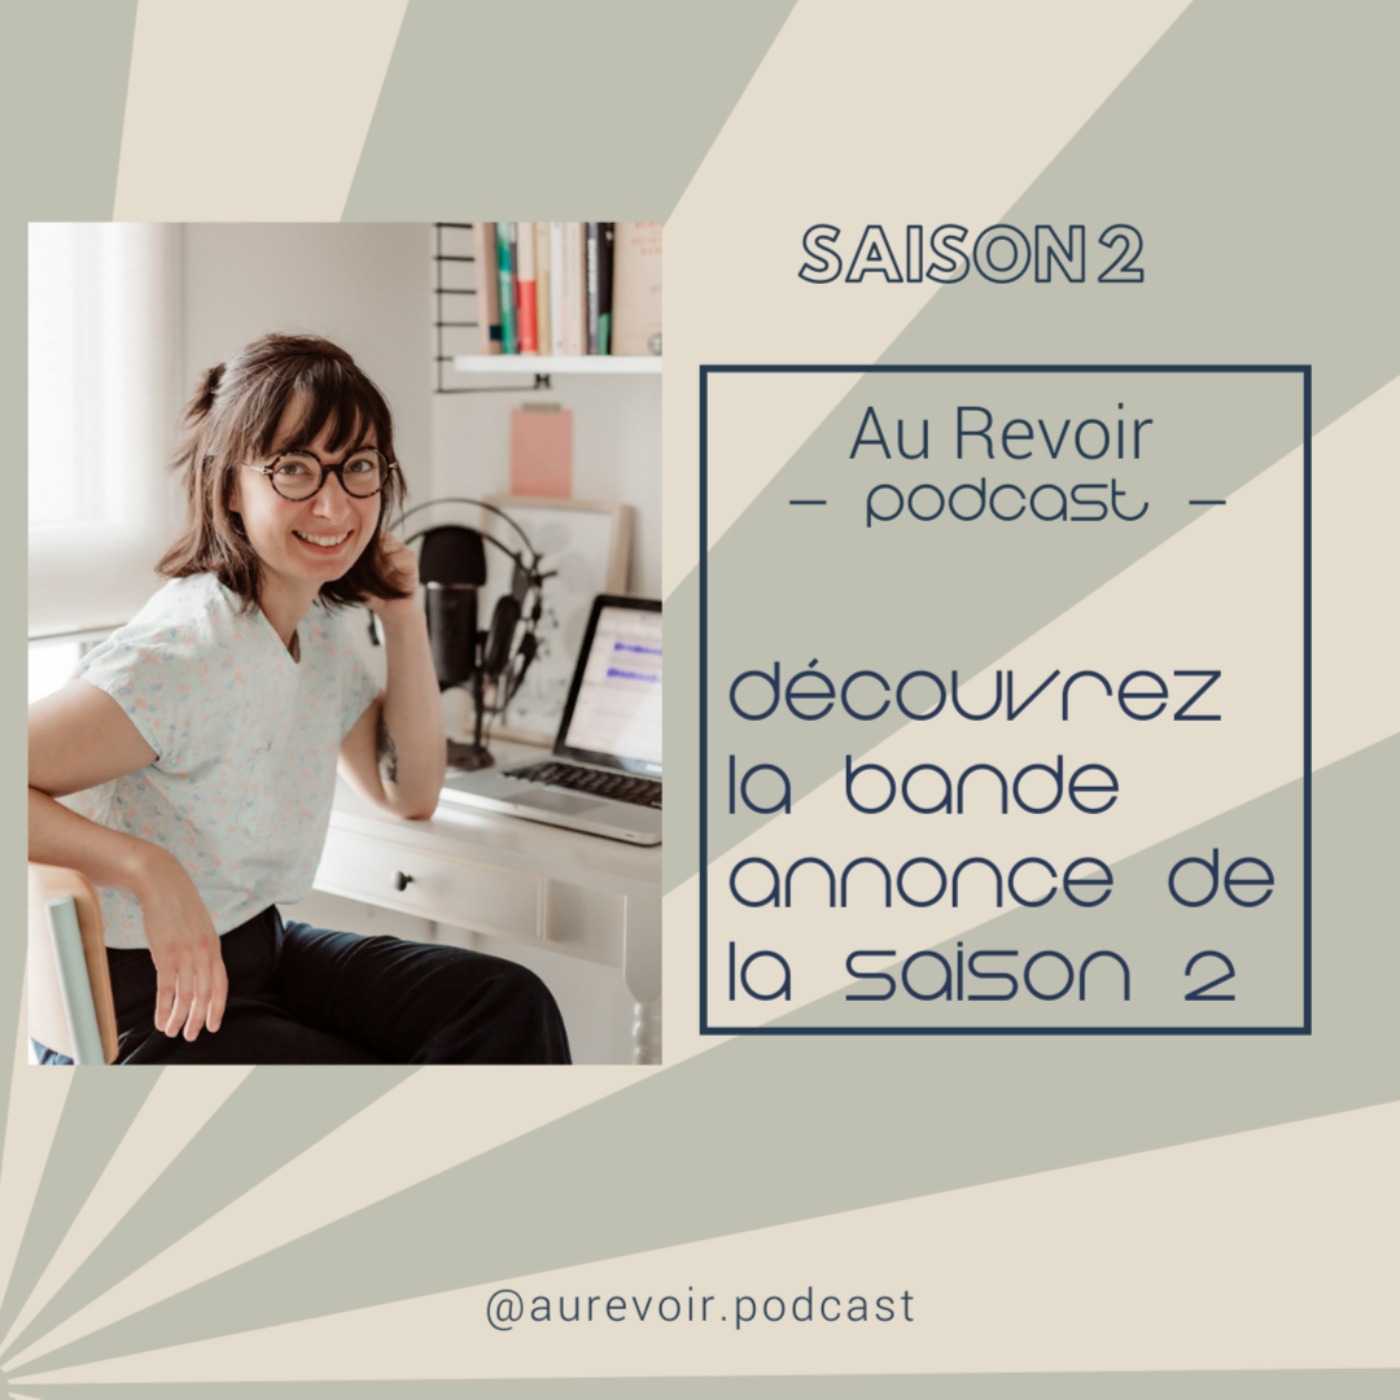 Deuil périnatal : la bande annonce de la saison 2 d'Au Revoir Podcast